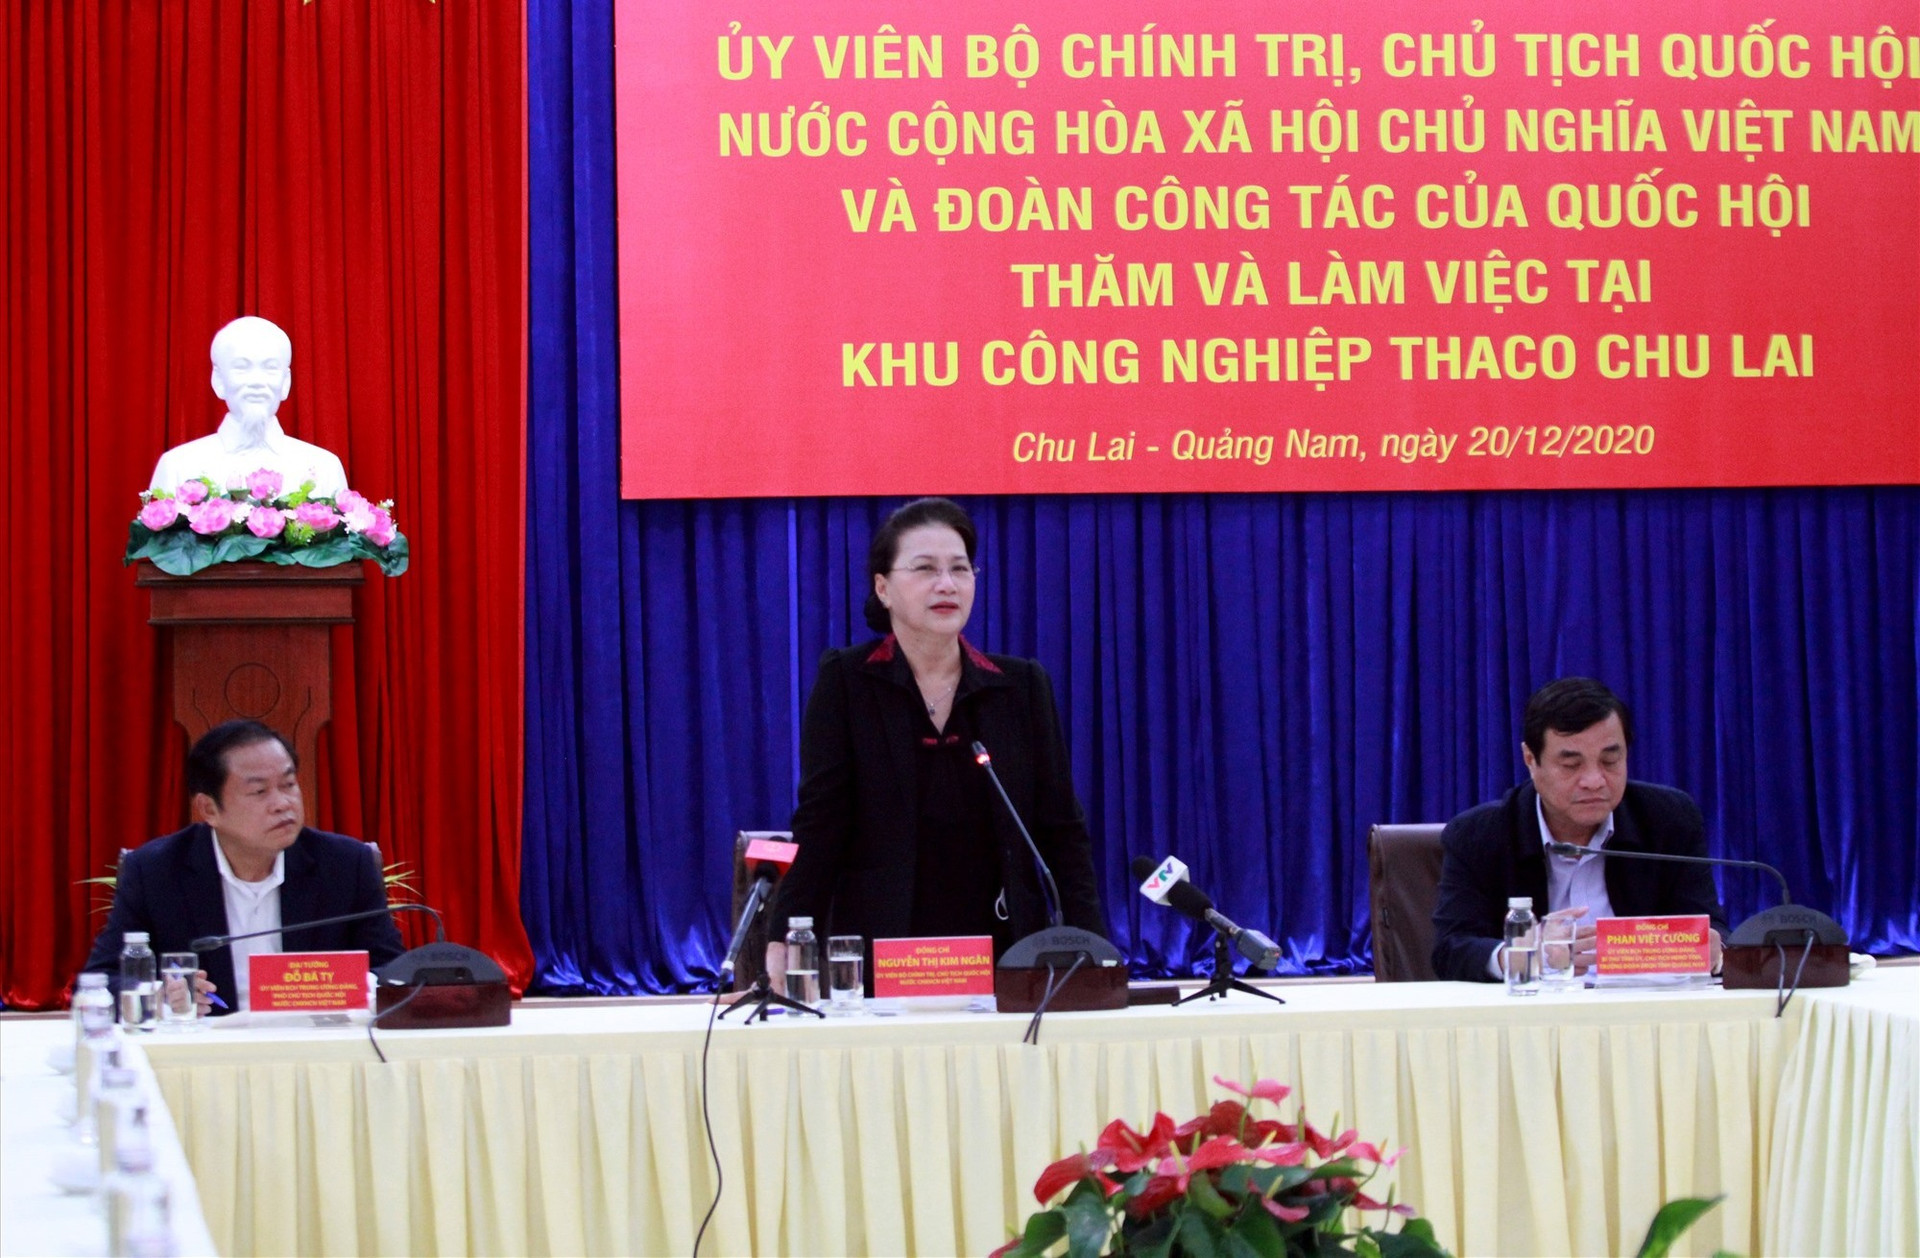 Chủ tịch Quốc hội Nguyễn Thị Kim Ngân đánh giá cao những nỗ lực của Quảng Nam trong phòng chống dịch, khắc phục hậu quả thiên tai cũng như phát triển kinh tế xã hội năm 2020.